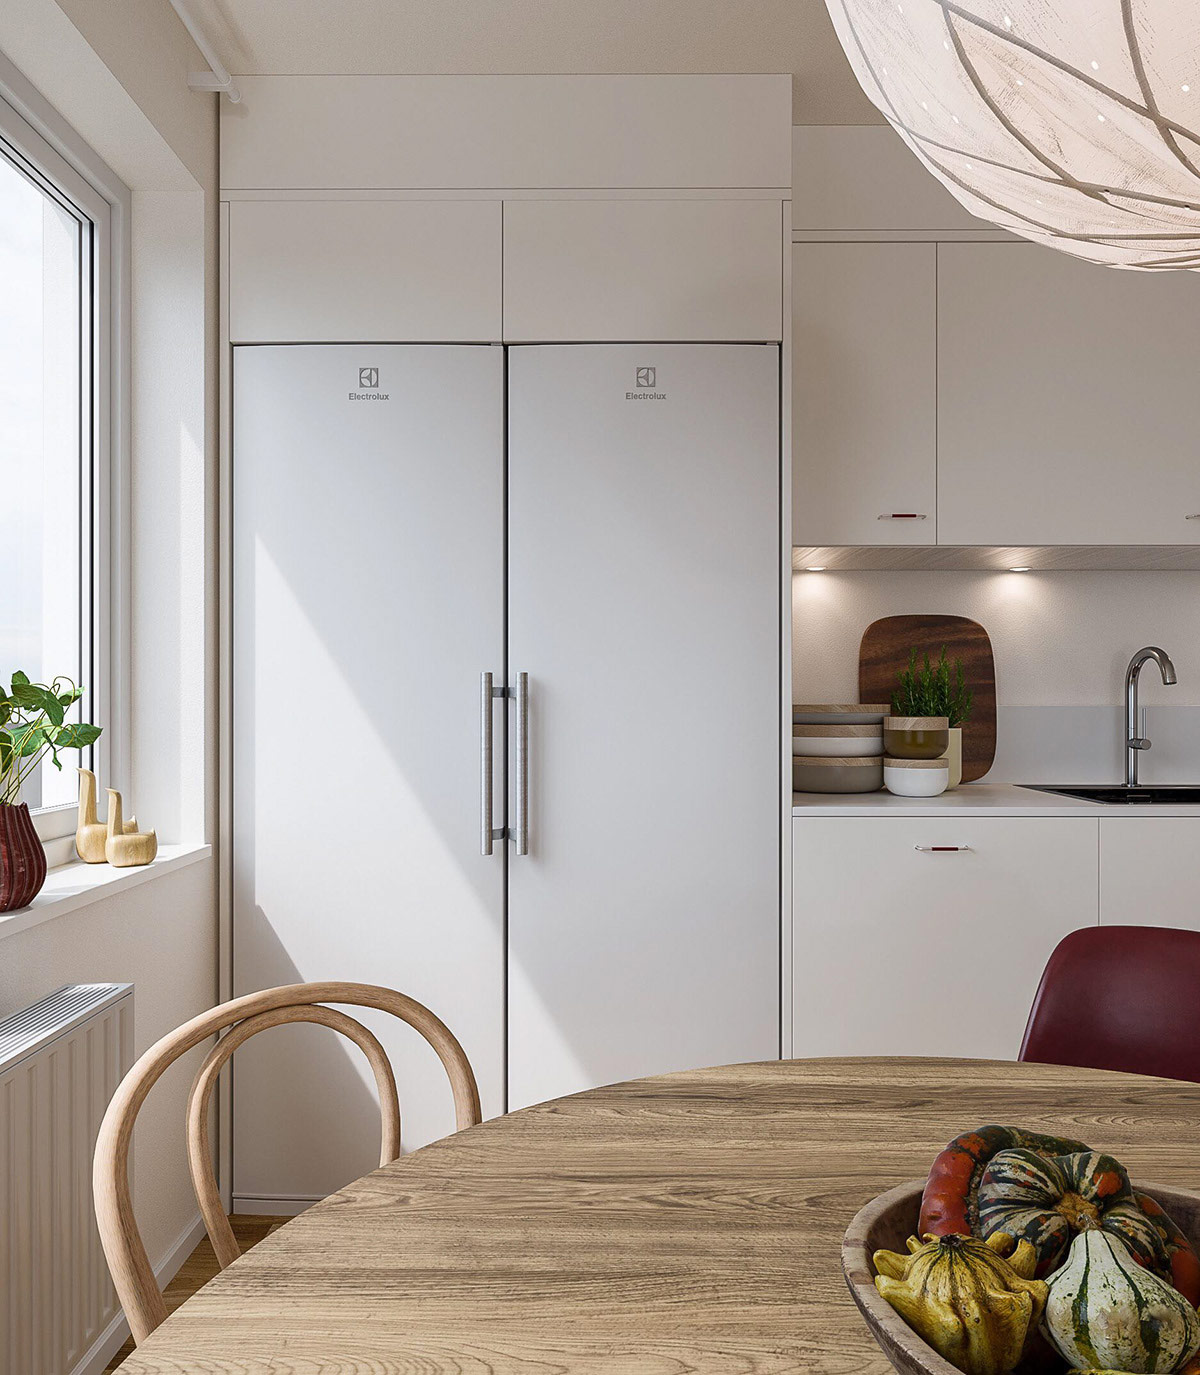 hình ảnh góc phòng bếp với tủ bếp màu trắng, bàn ăn tròn bằng gỗ, cửa sổ kính, cây xanh đặt trên bệ cửa sổ